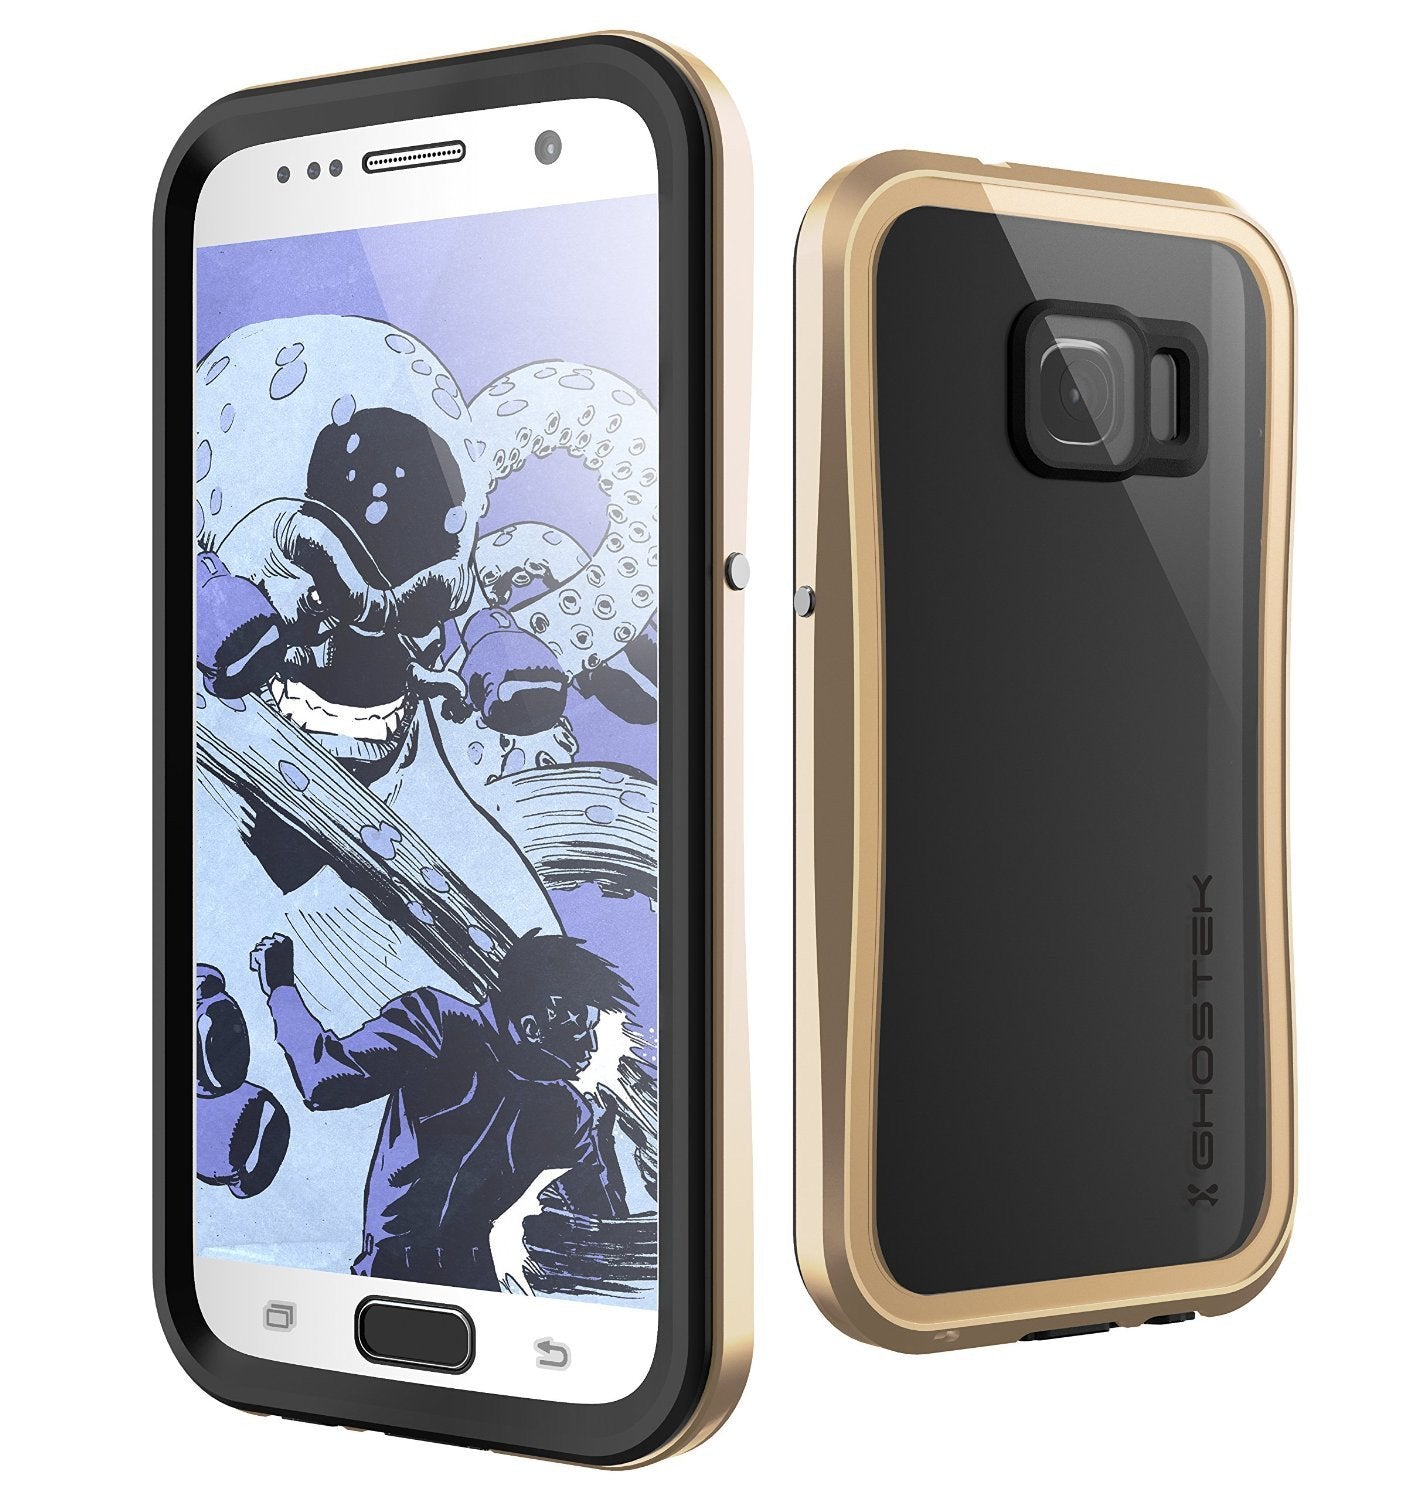 Galaxy S7 Waterproof Case, Ghostek Atomic 2.0 Gold  Water/Shock/Dirt/Snow Proof | Lifetime Warranty - PunkCase NZ